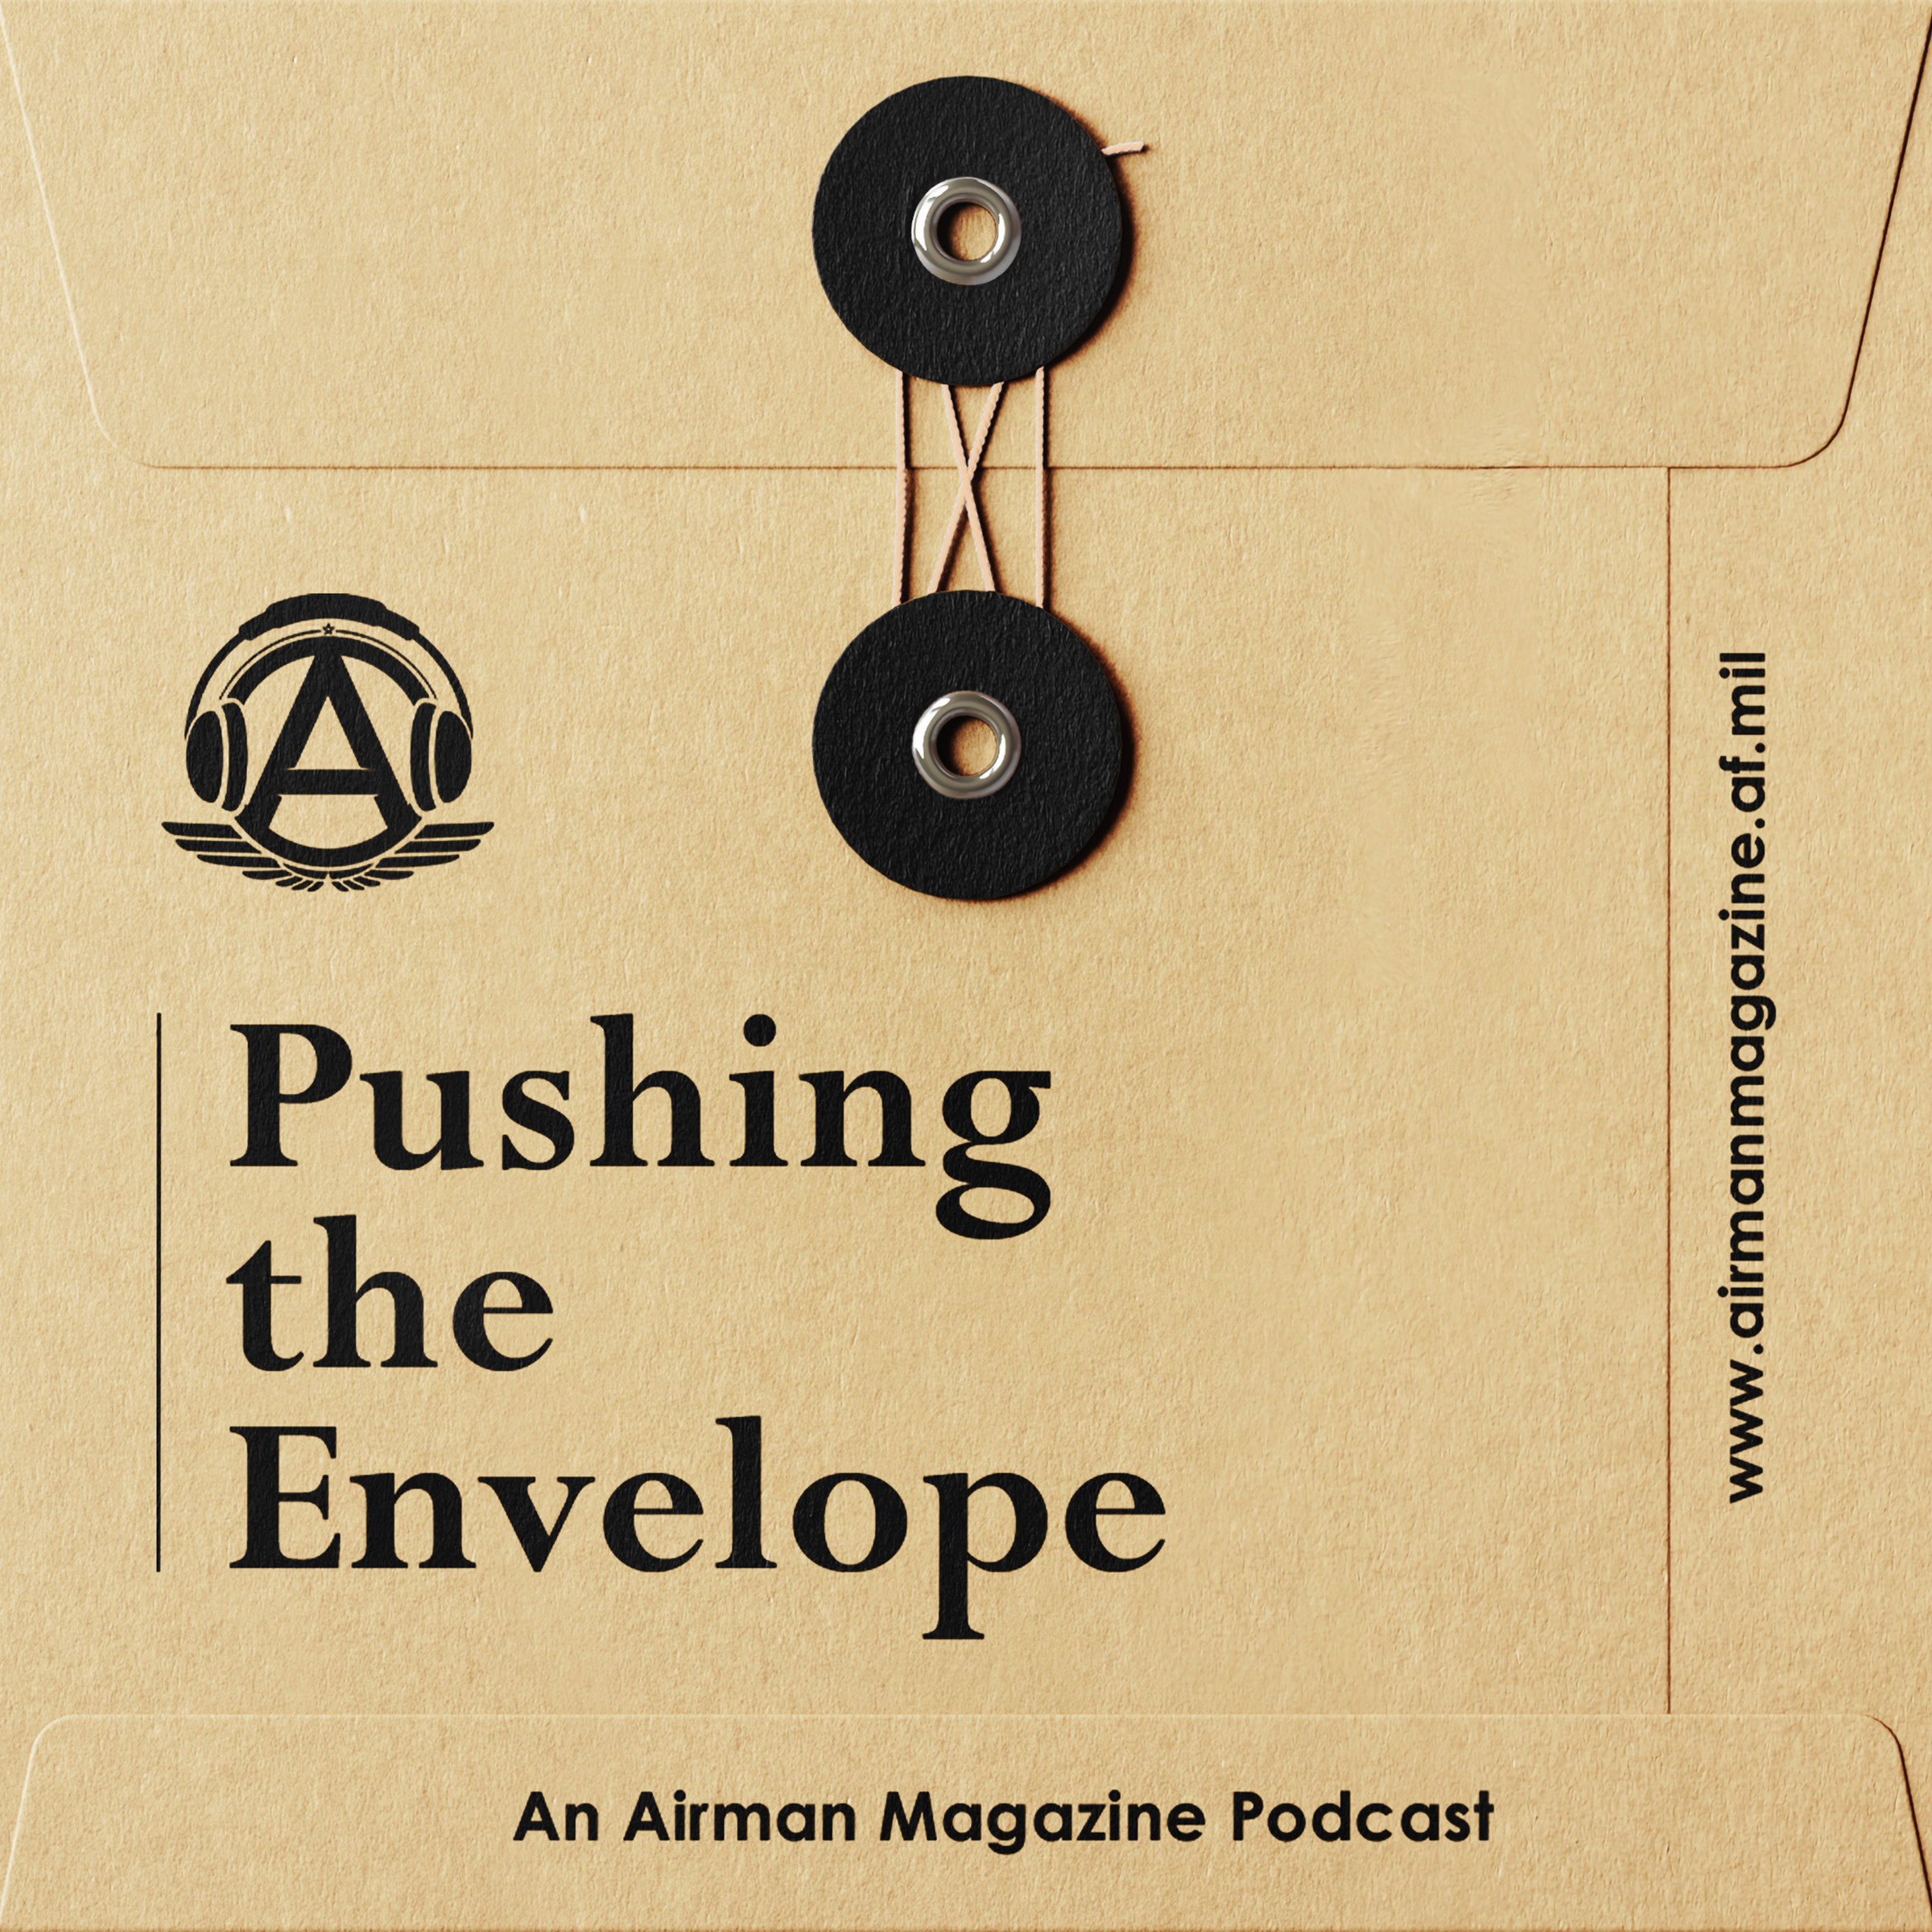 Airman Magazine Podcast: Pushing the Envelope